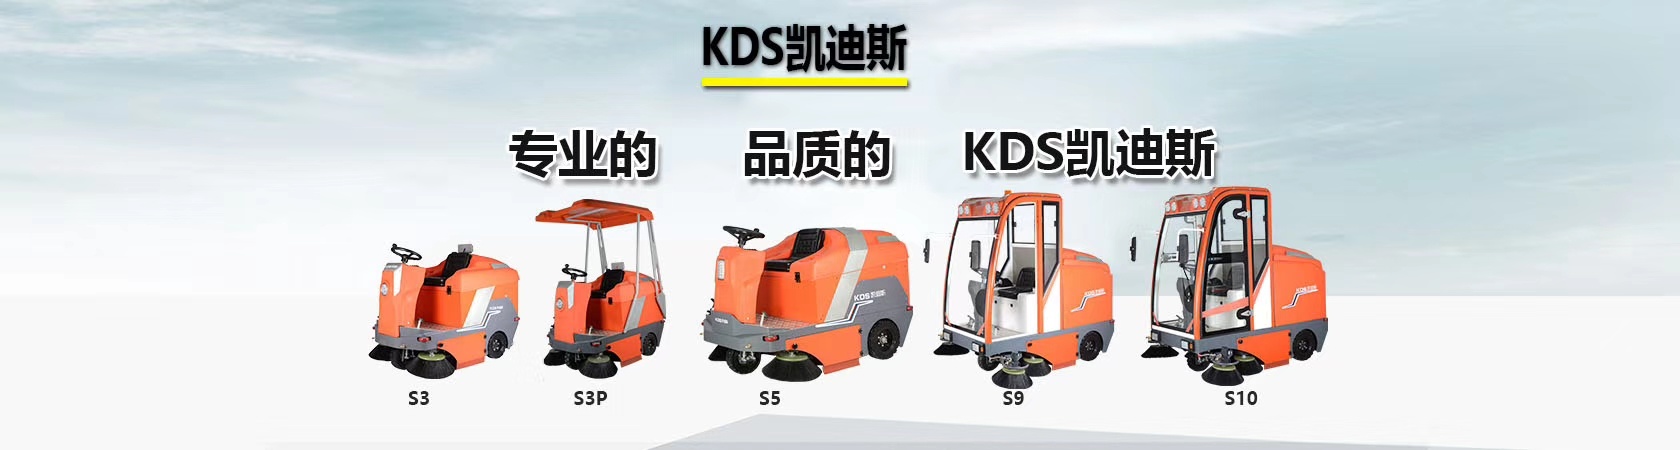 嘉兴机械锻造厂油污灰尘驾驶式扫地机KL950 高效快速清洗吸干拖地机示例图16